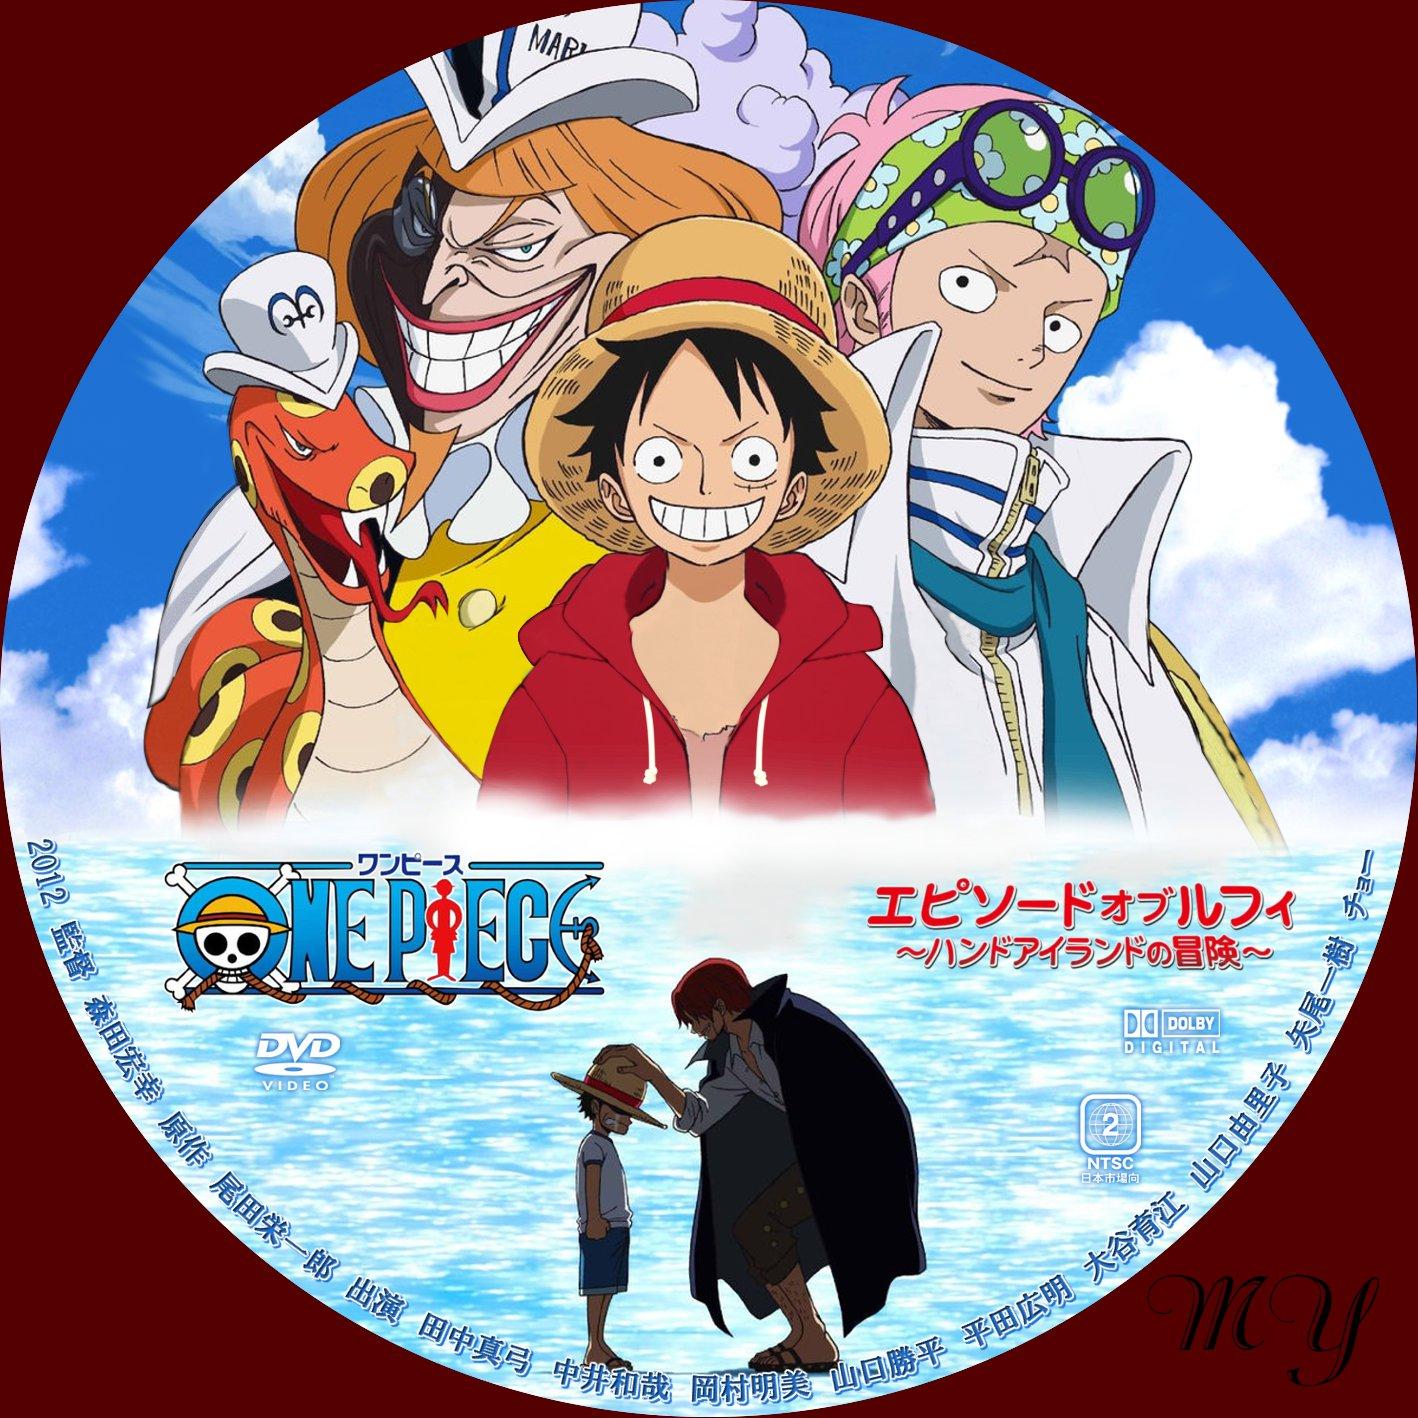 One Piece エピソード オブ ルフィ ハンドアイランドの冒険 ほにょほにょな一日無料dvd ラベル製作室